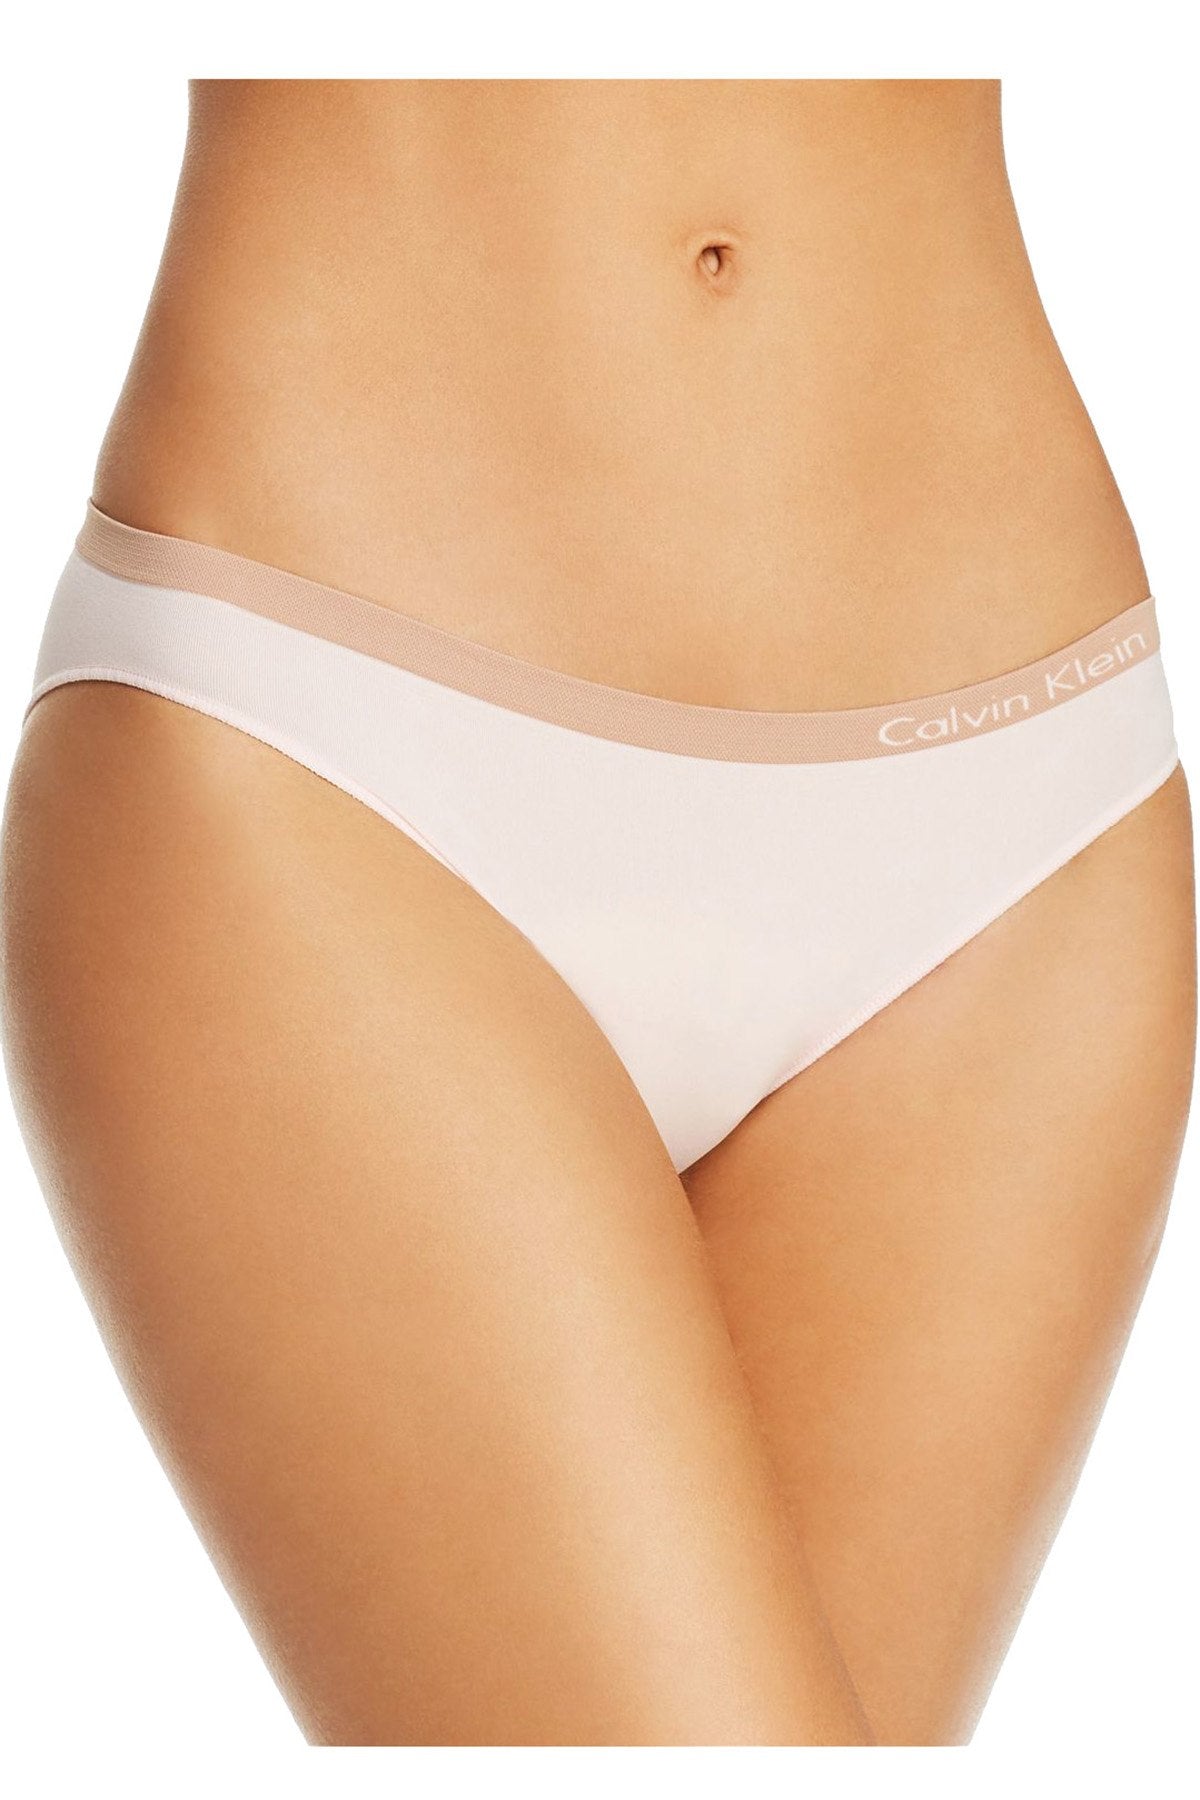 Calvin Klein Nymphs-Thigh Pure Seamless Bikini Brief